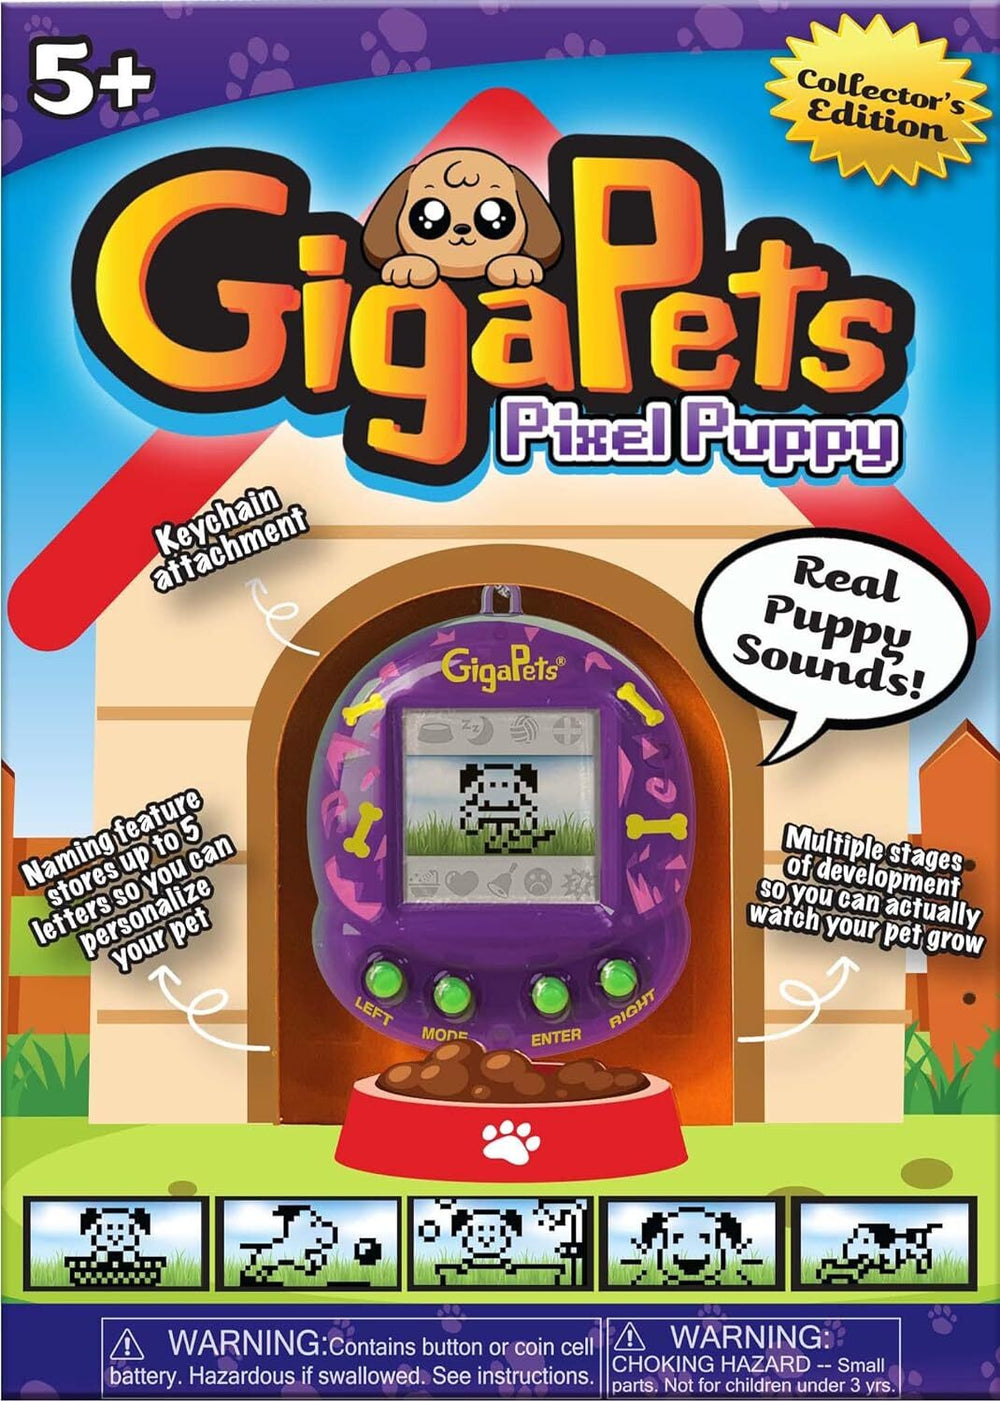 GigaPets (Pixel Puppy)